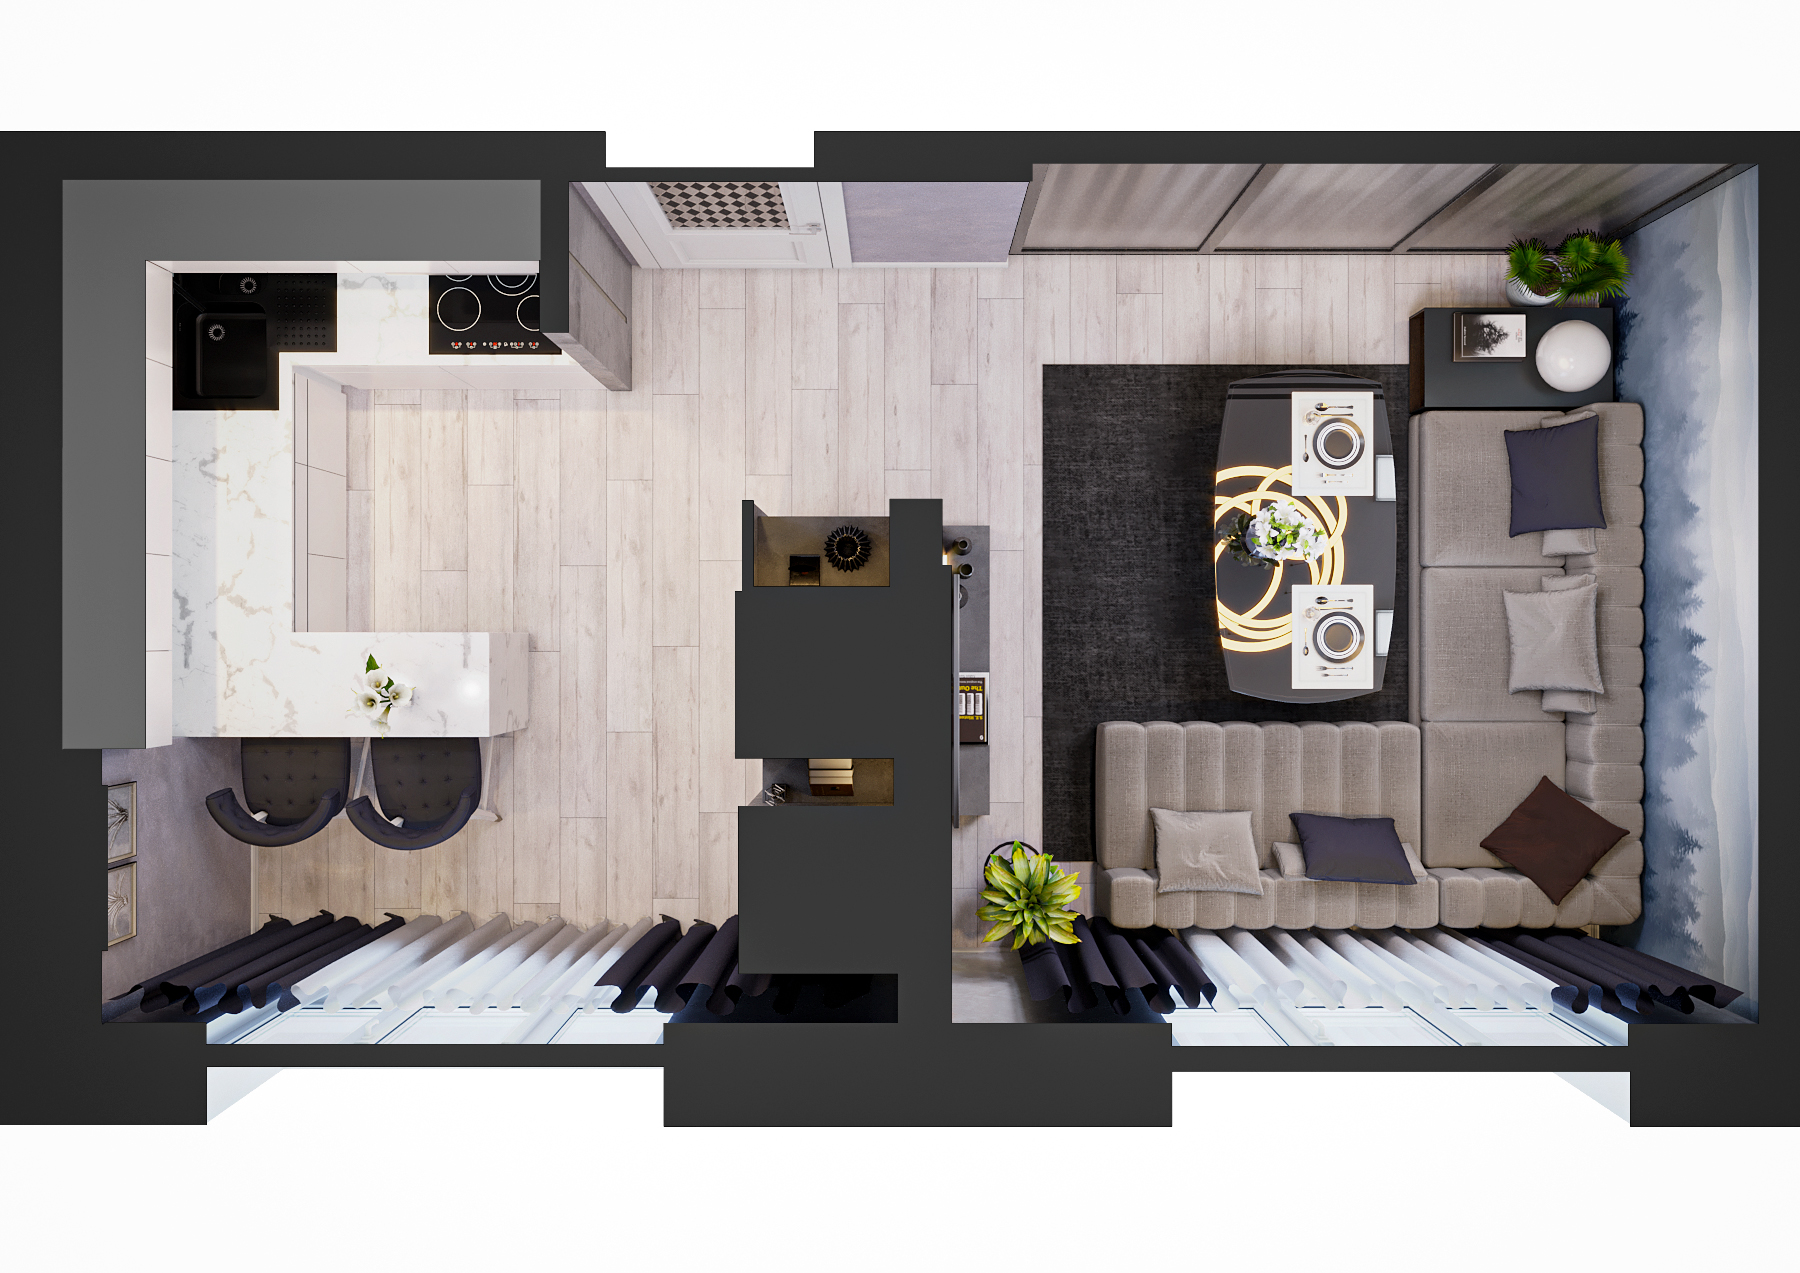 Кухня-їдальня в 3d max corona render зображення